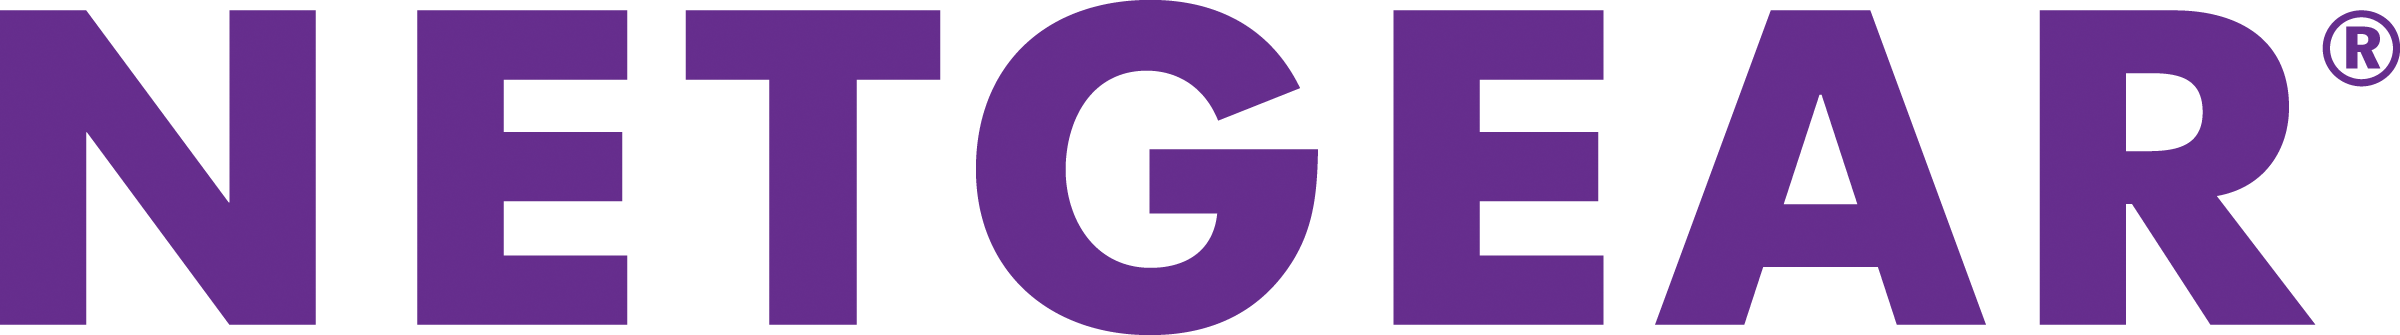 Image result for Netgear logo